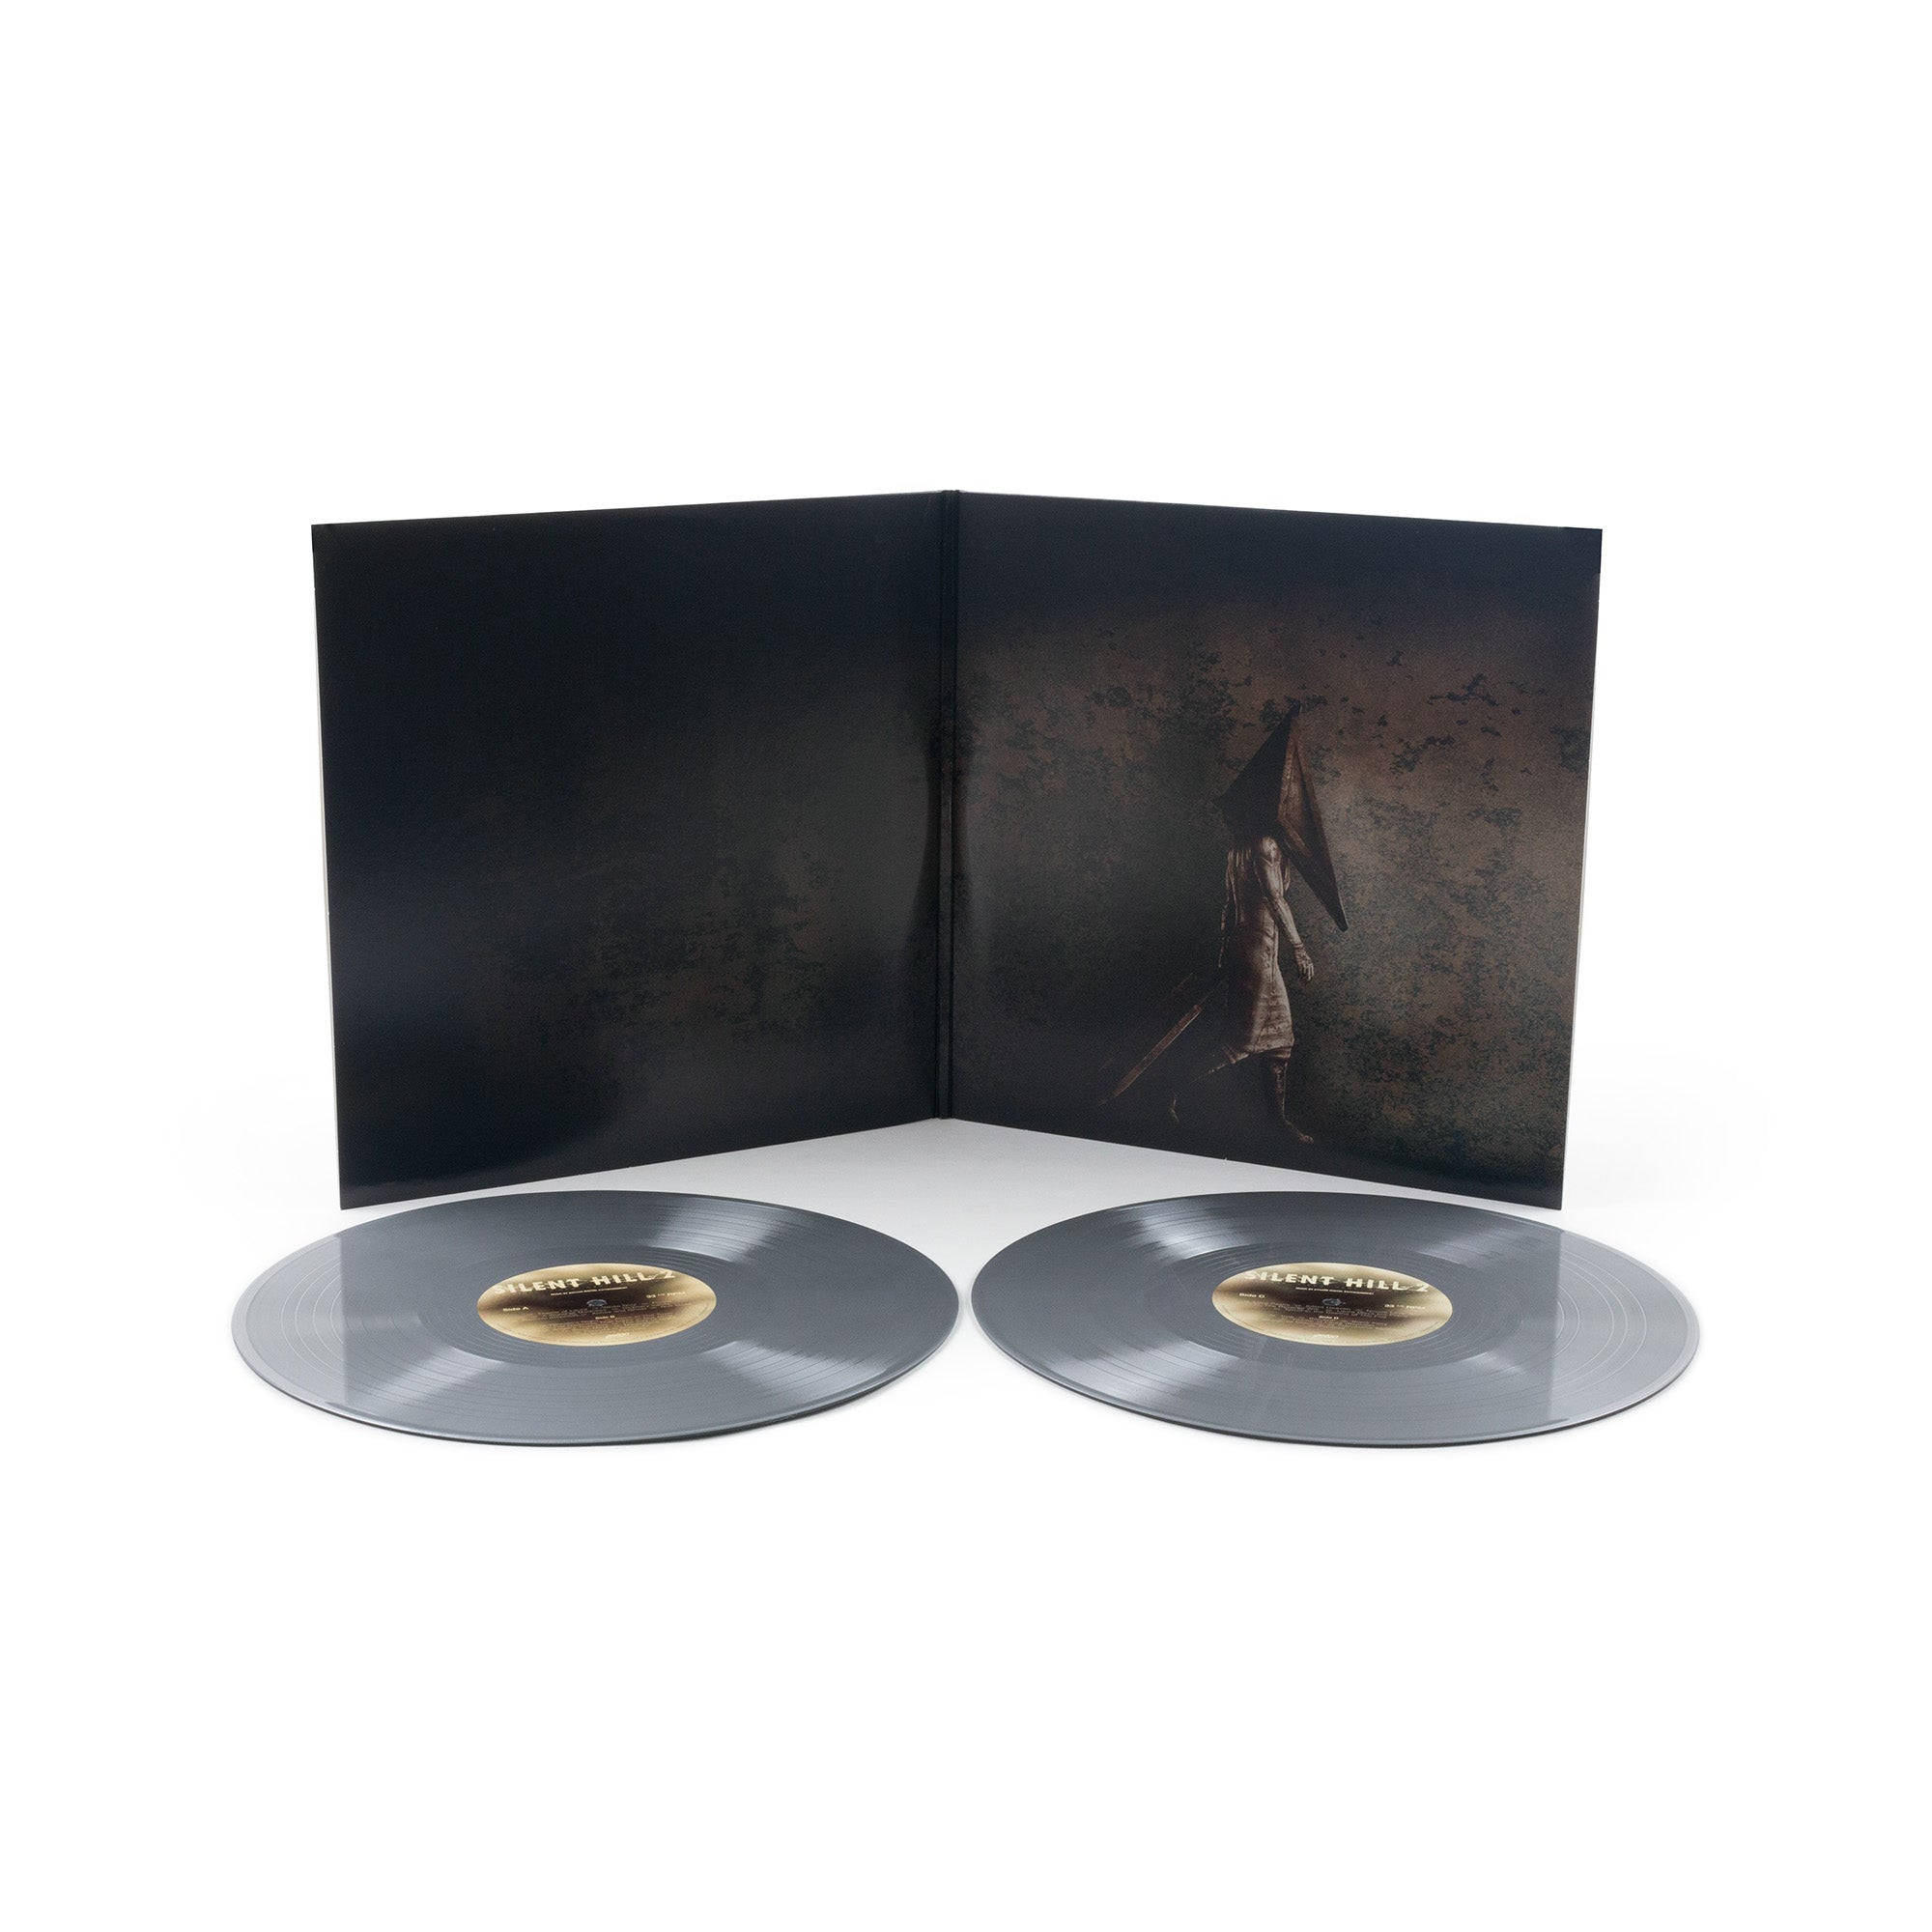 Silent Hill 2 Soundtrack LP サントラ レコード-